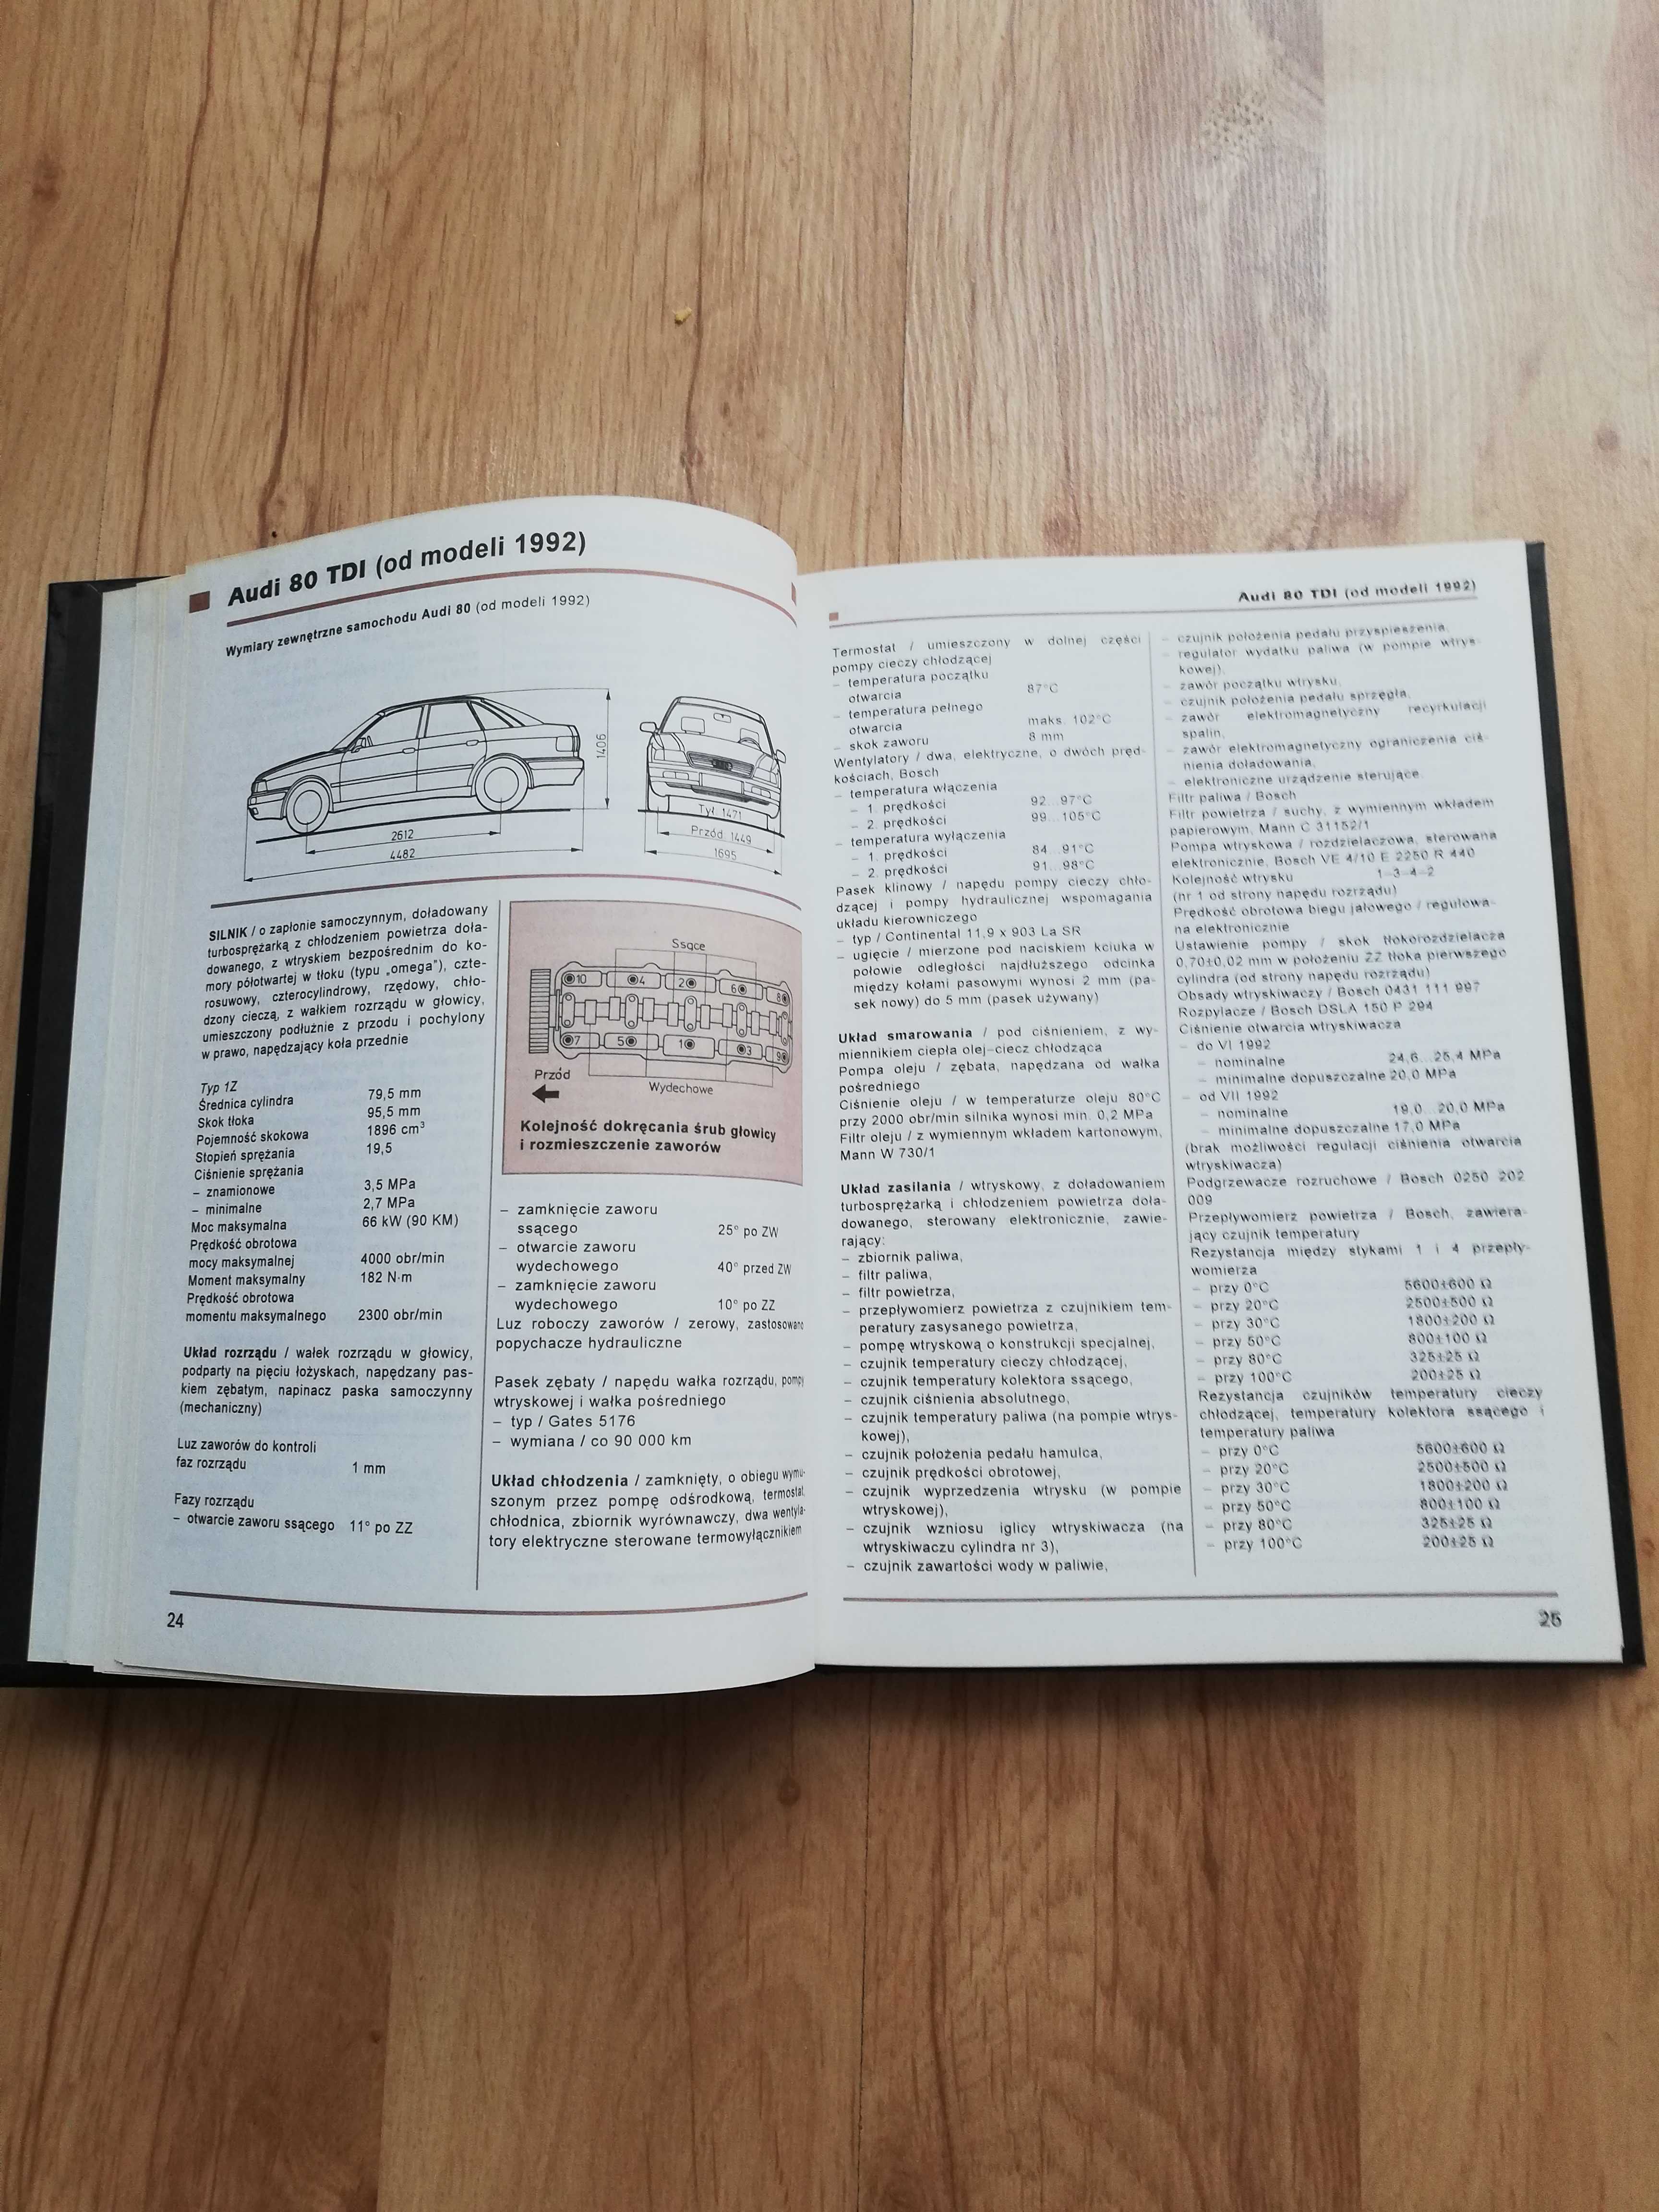 Książka Samochody osobowe opisy techniczne i dane regulacyjne